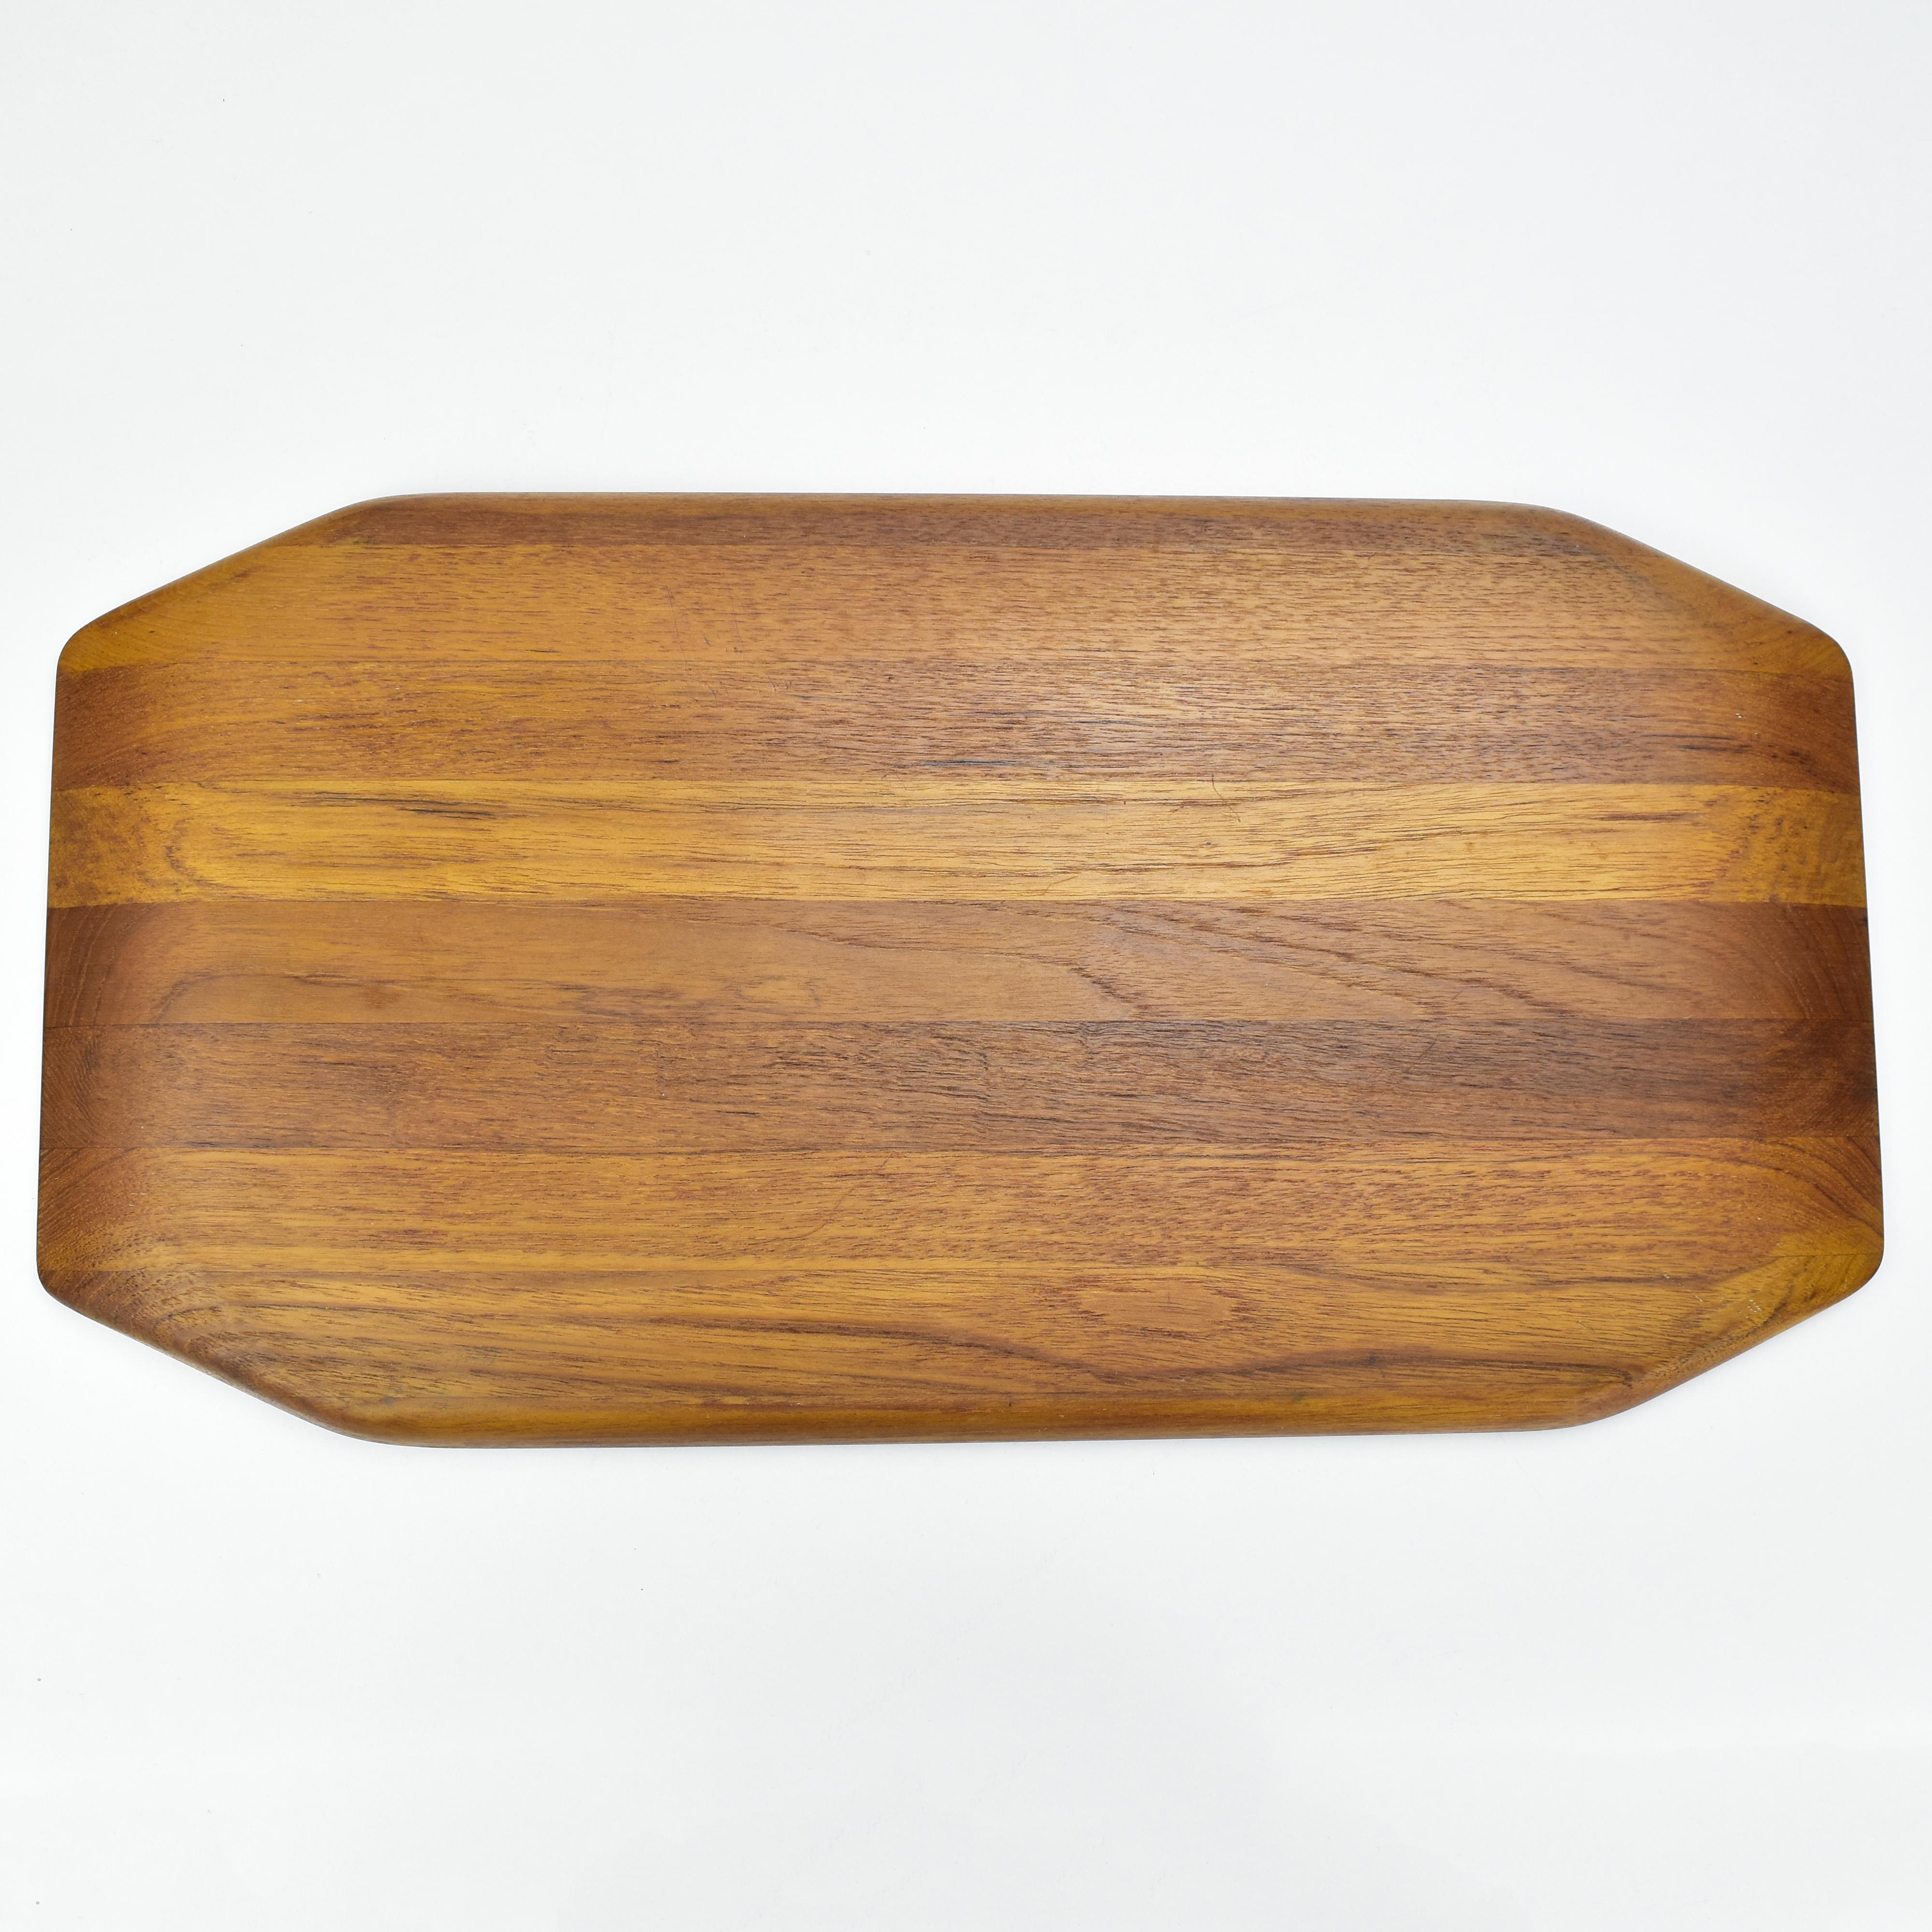 1950s Danish Modern Design Teak Wood Serving Tray by Jens Quistgaard Dansk MCM For Sale 1